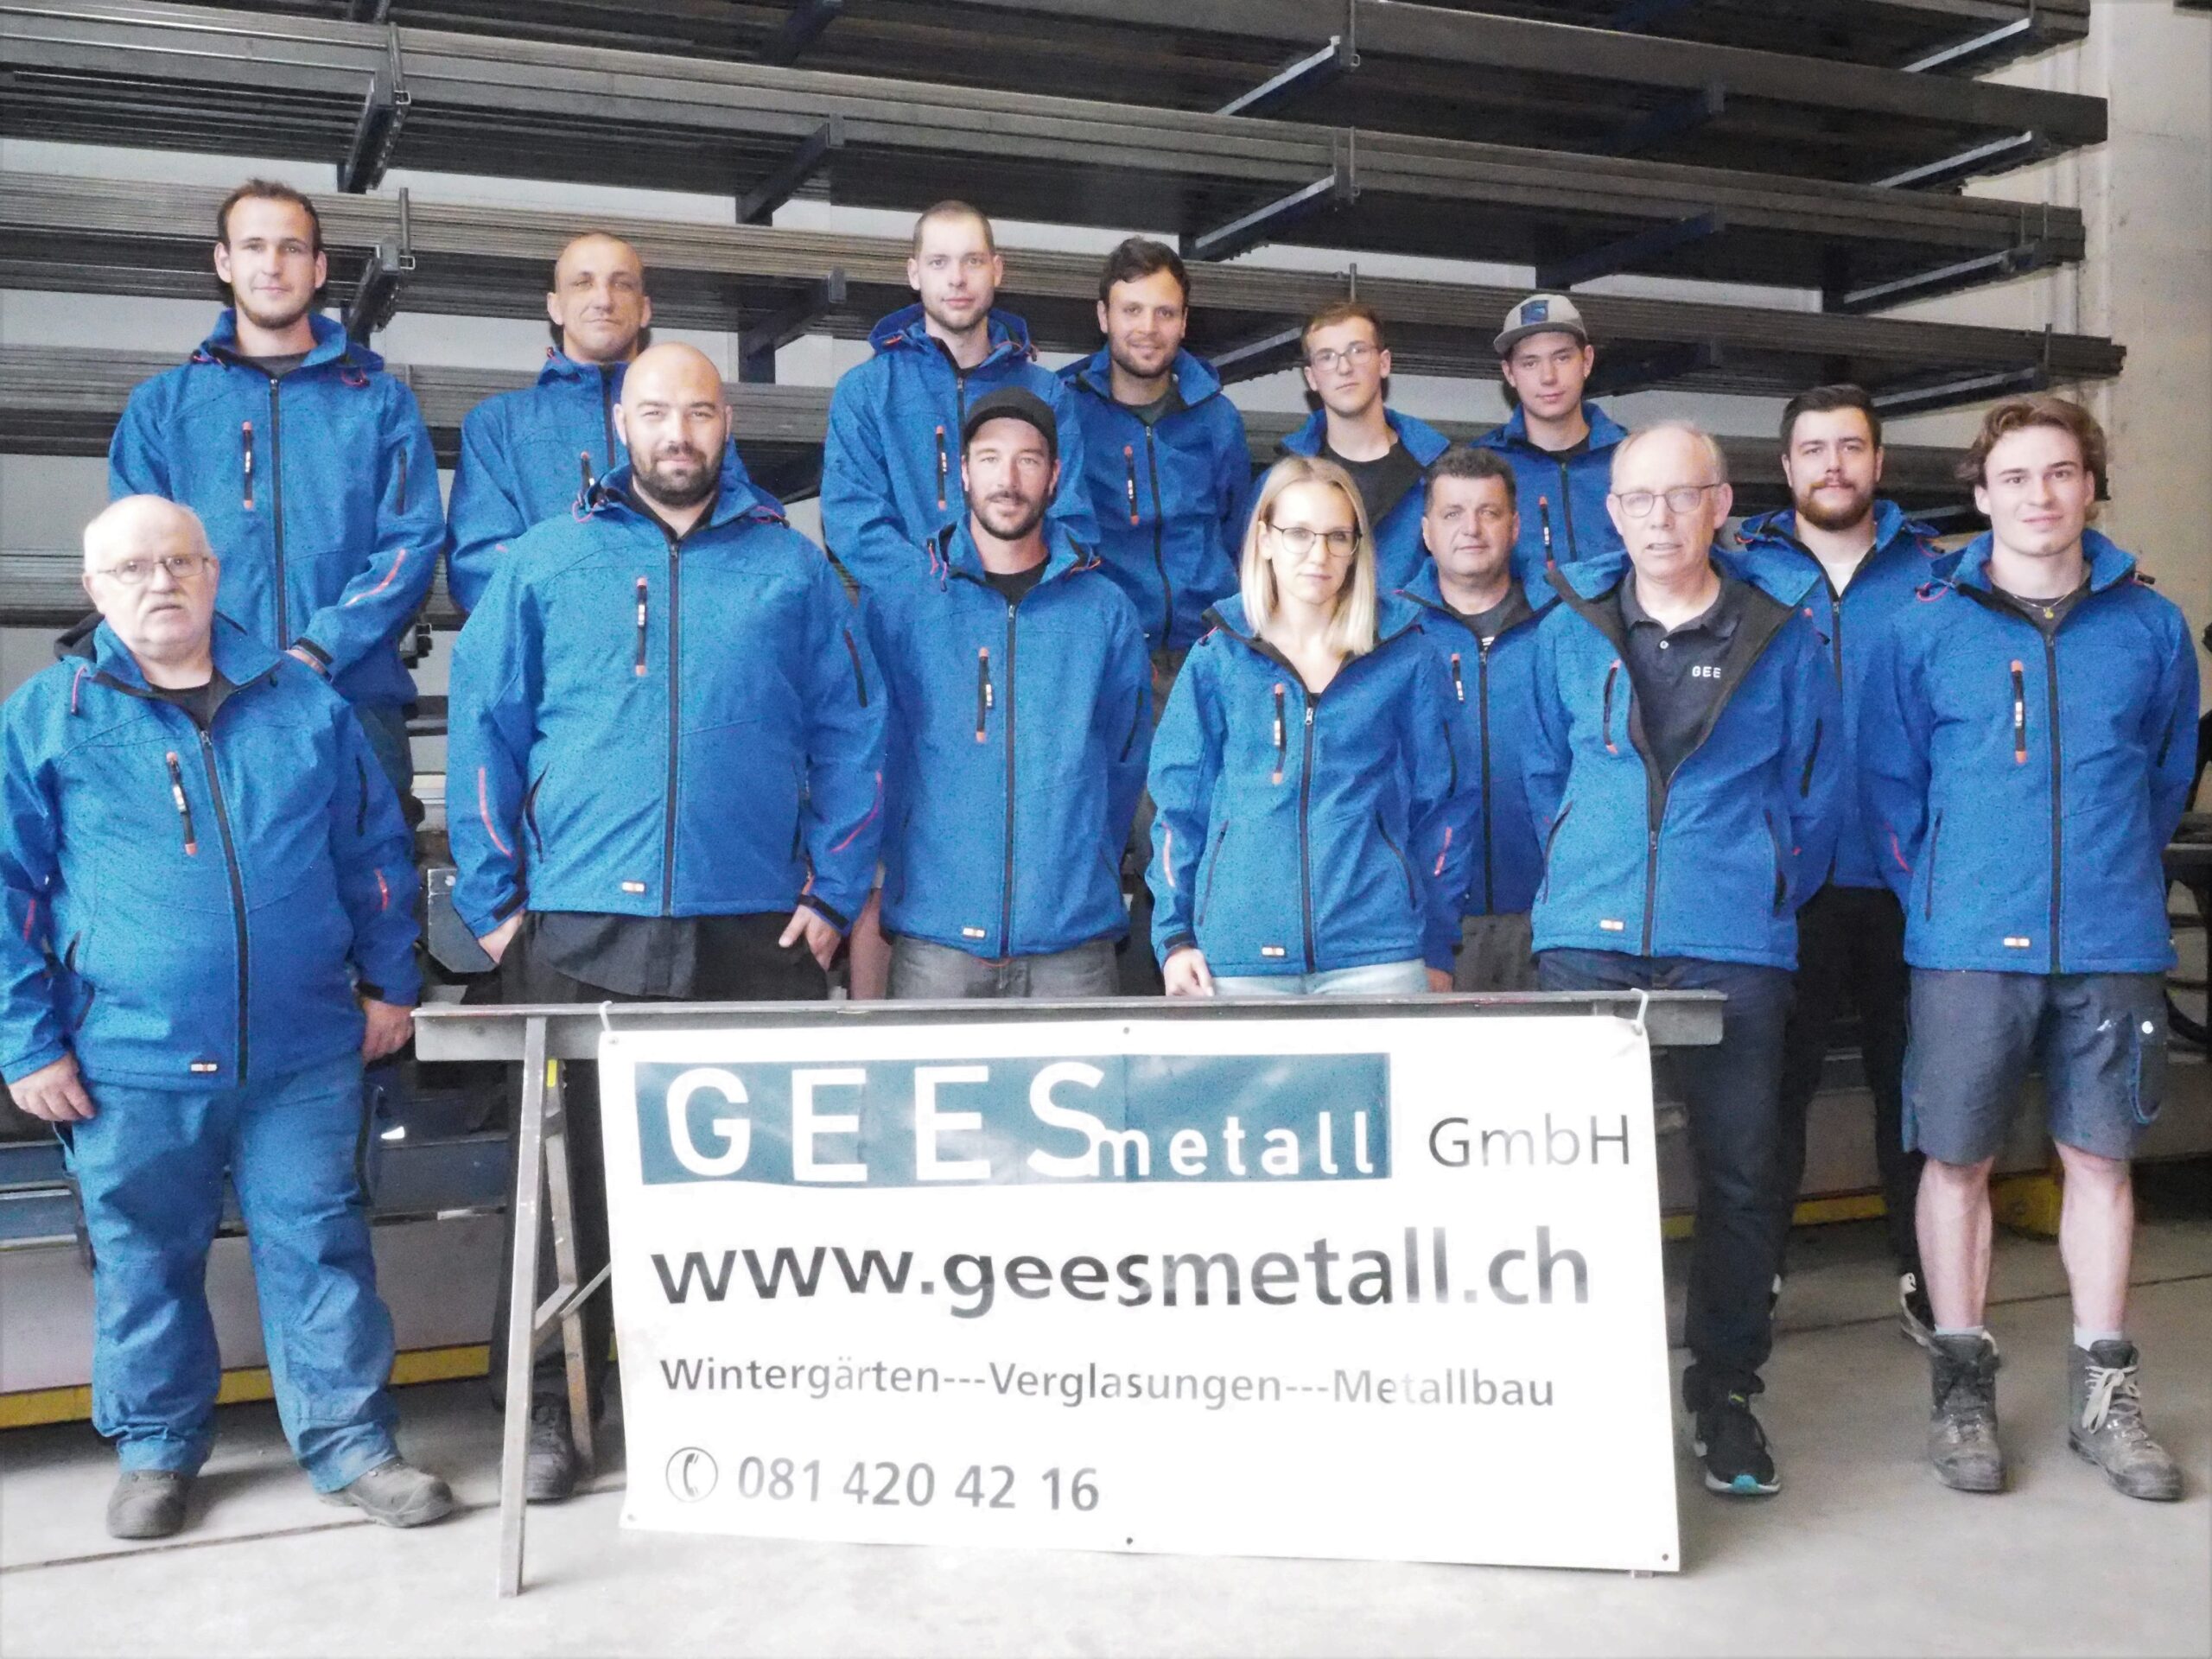 gees-metall-schweiz-graubuenden-titelbild-team